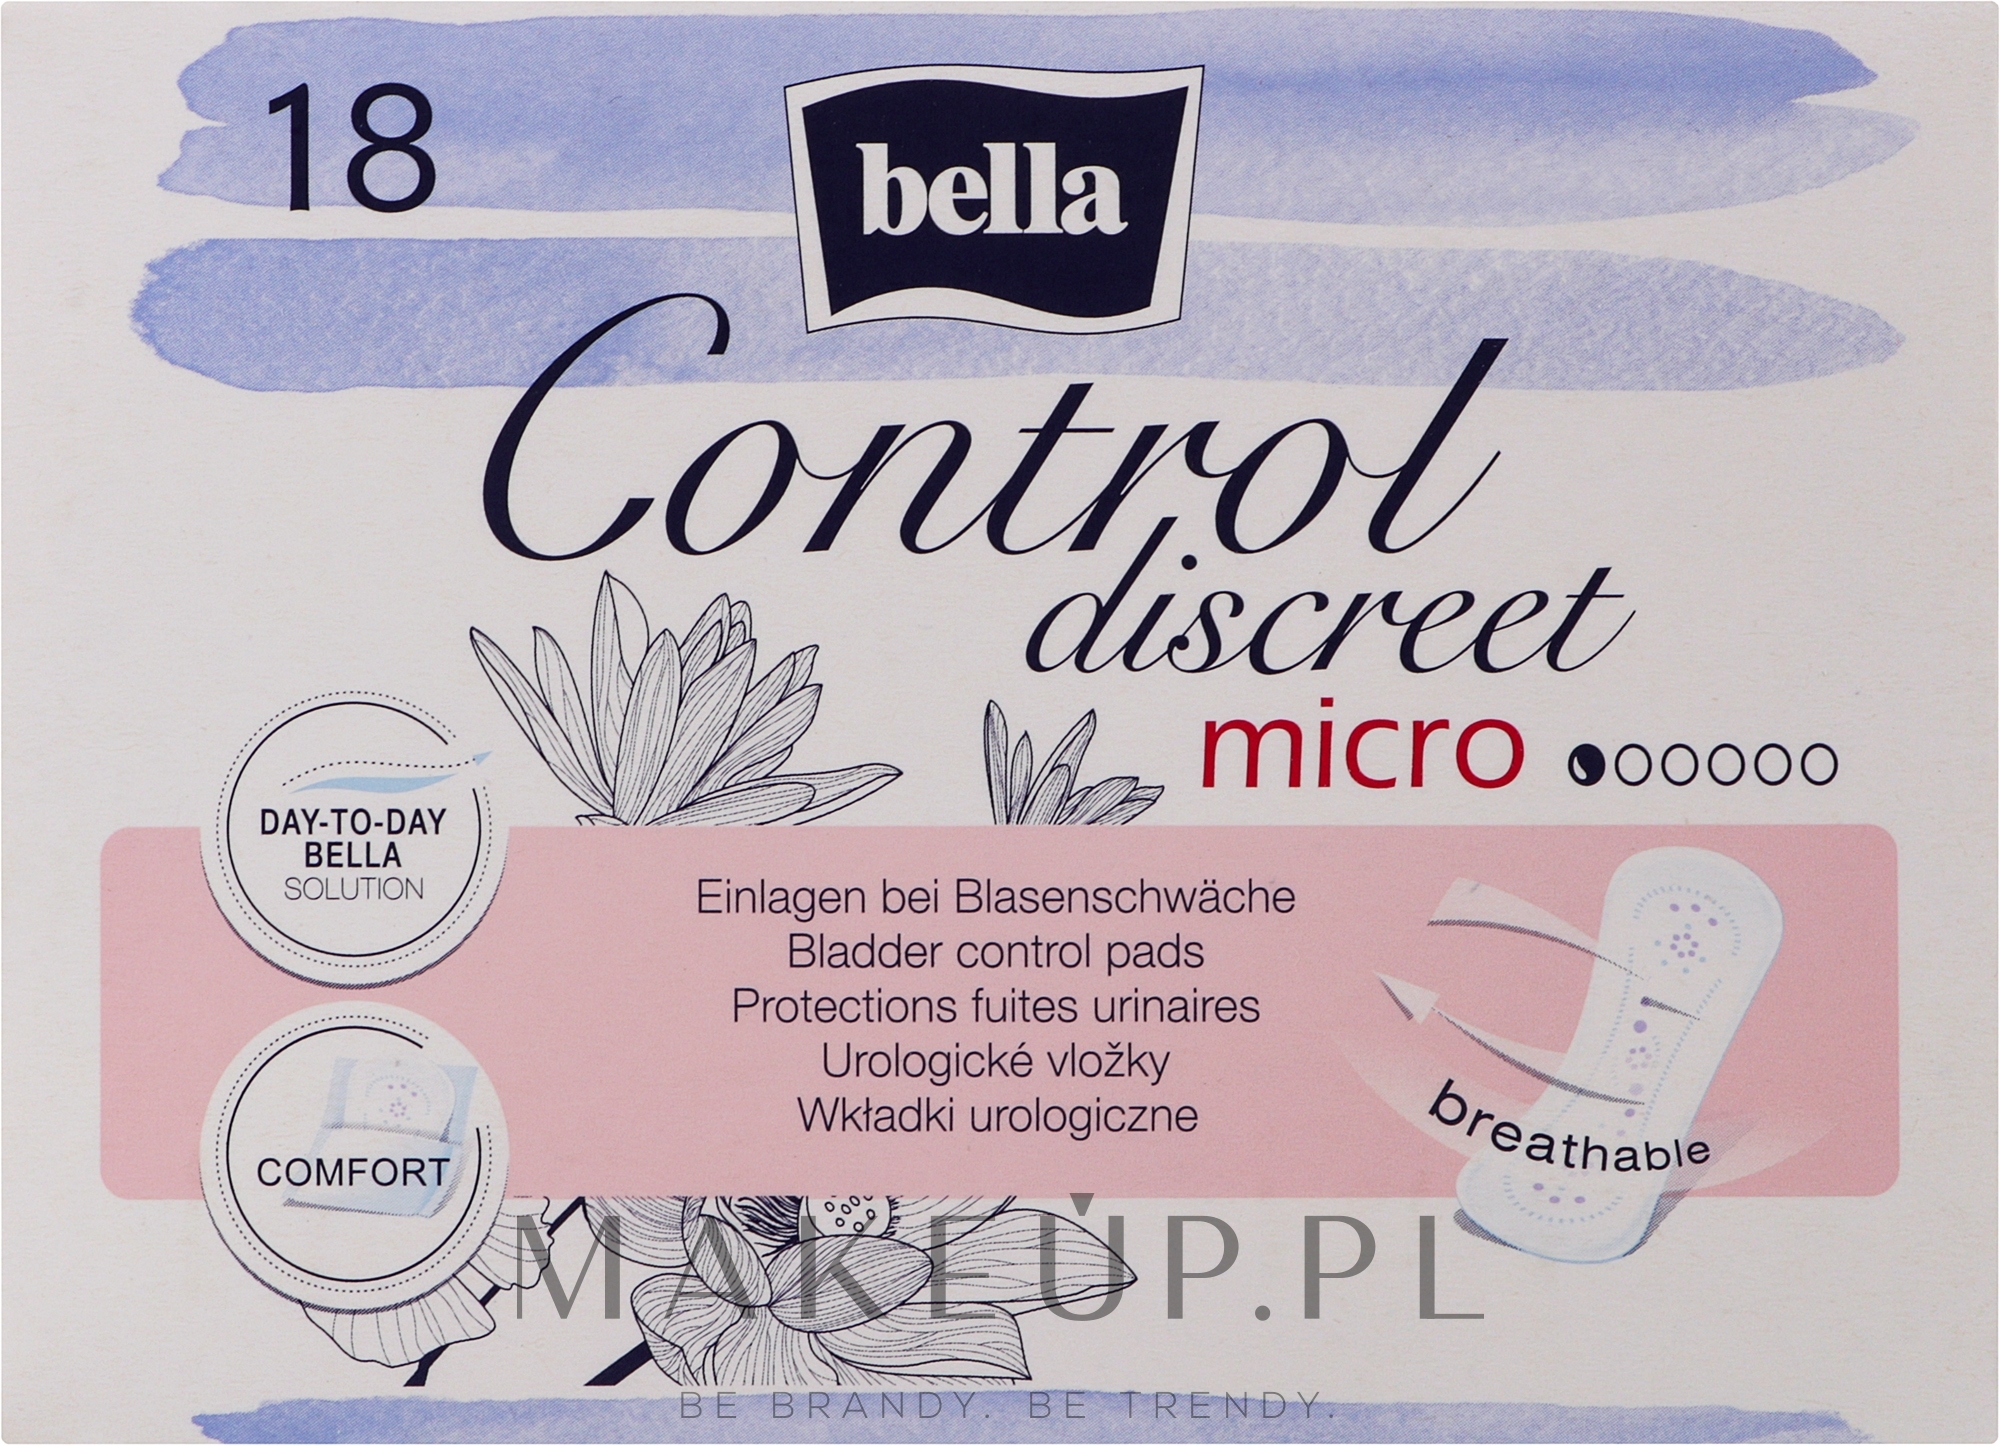 Wkładki urologiczne, 18 szt. - Bella Control Discreet Micro Bladder Control Pads — Zdjęcie 18 szt.